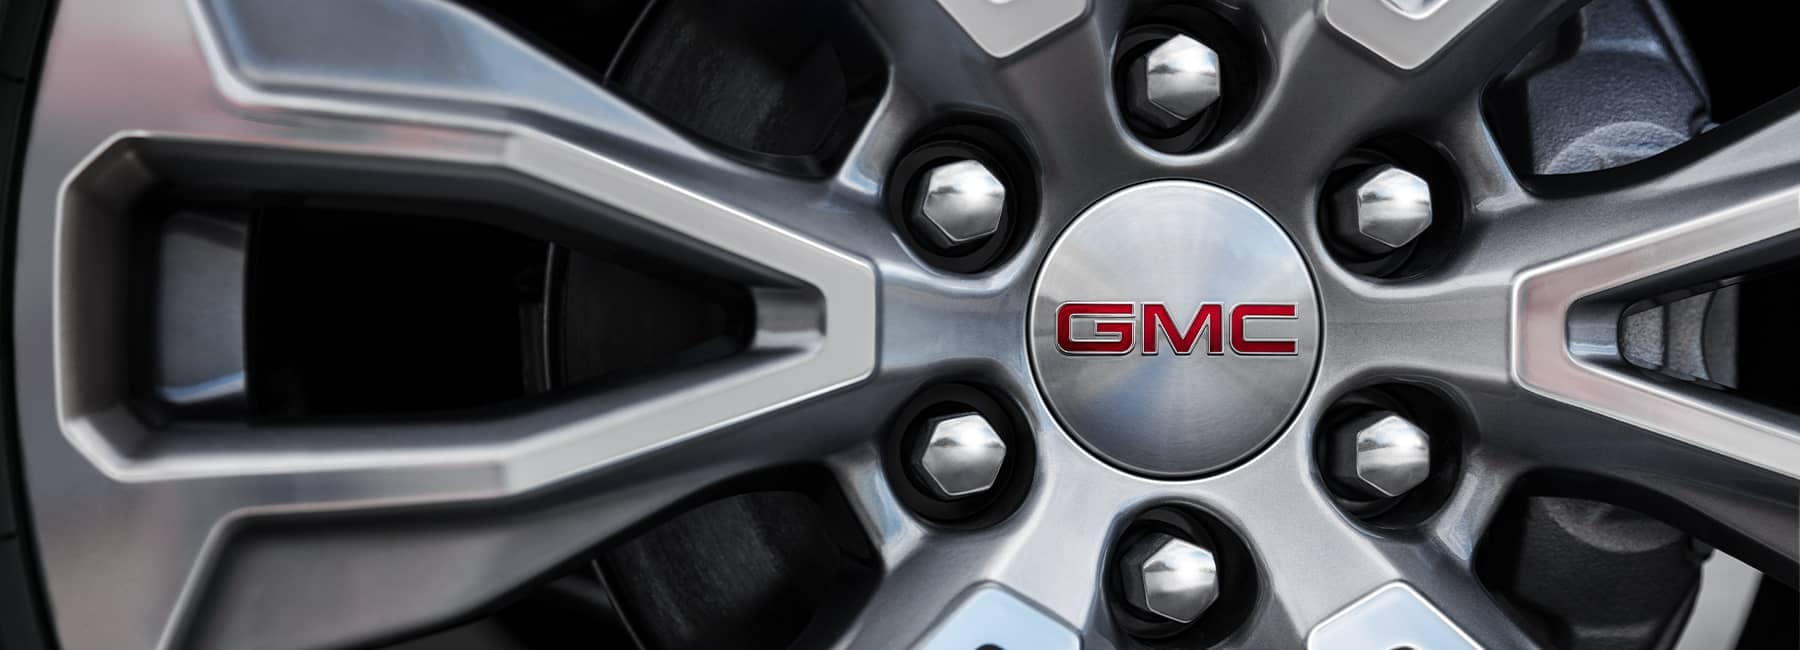 GMC Wheel Hubcap